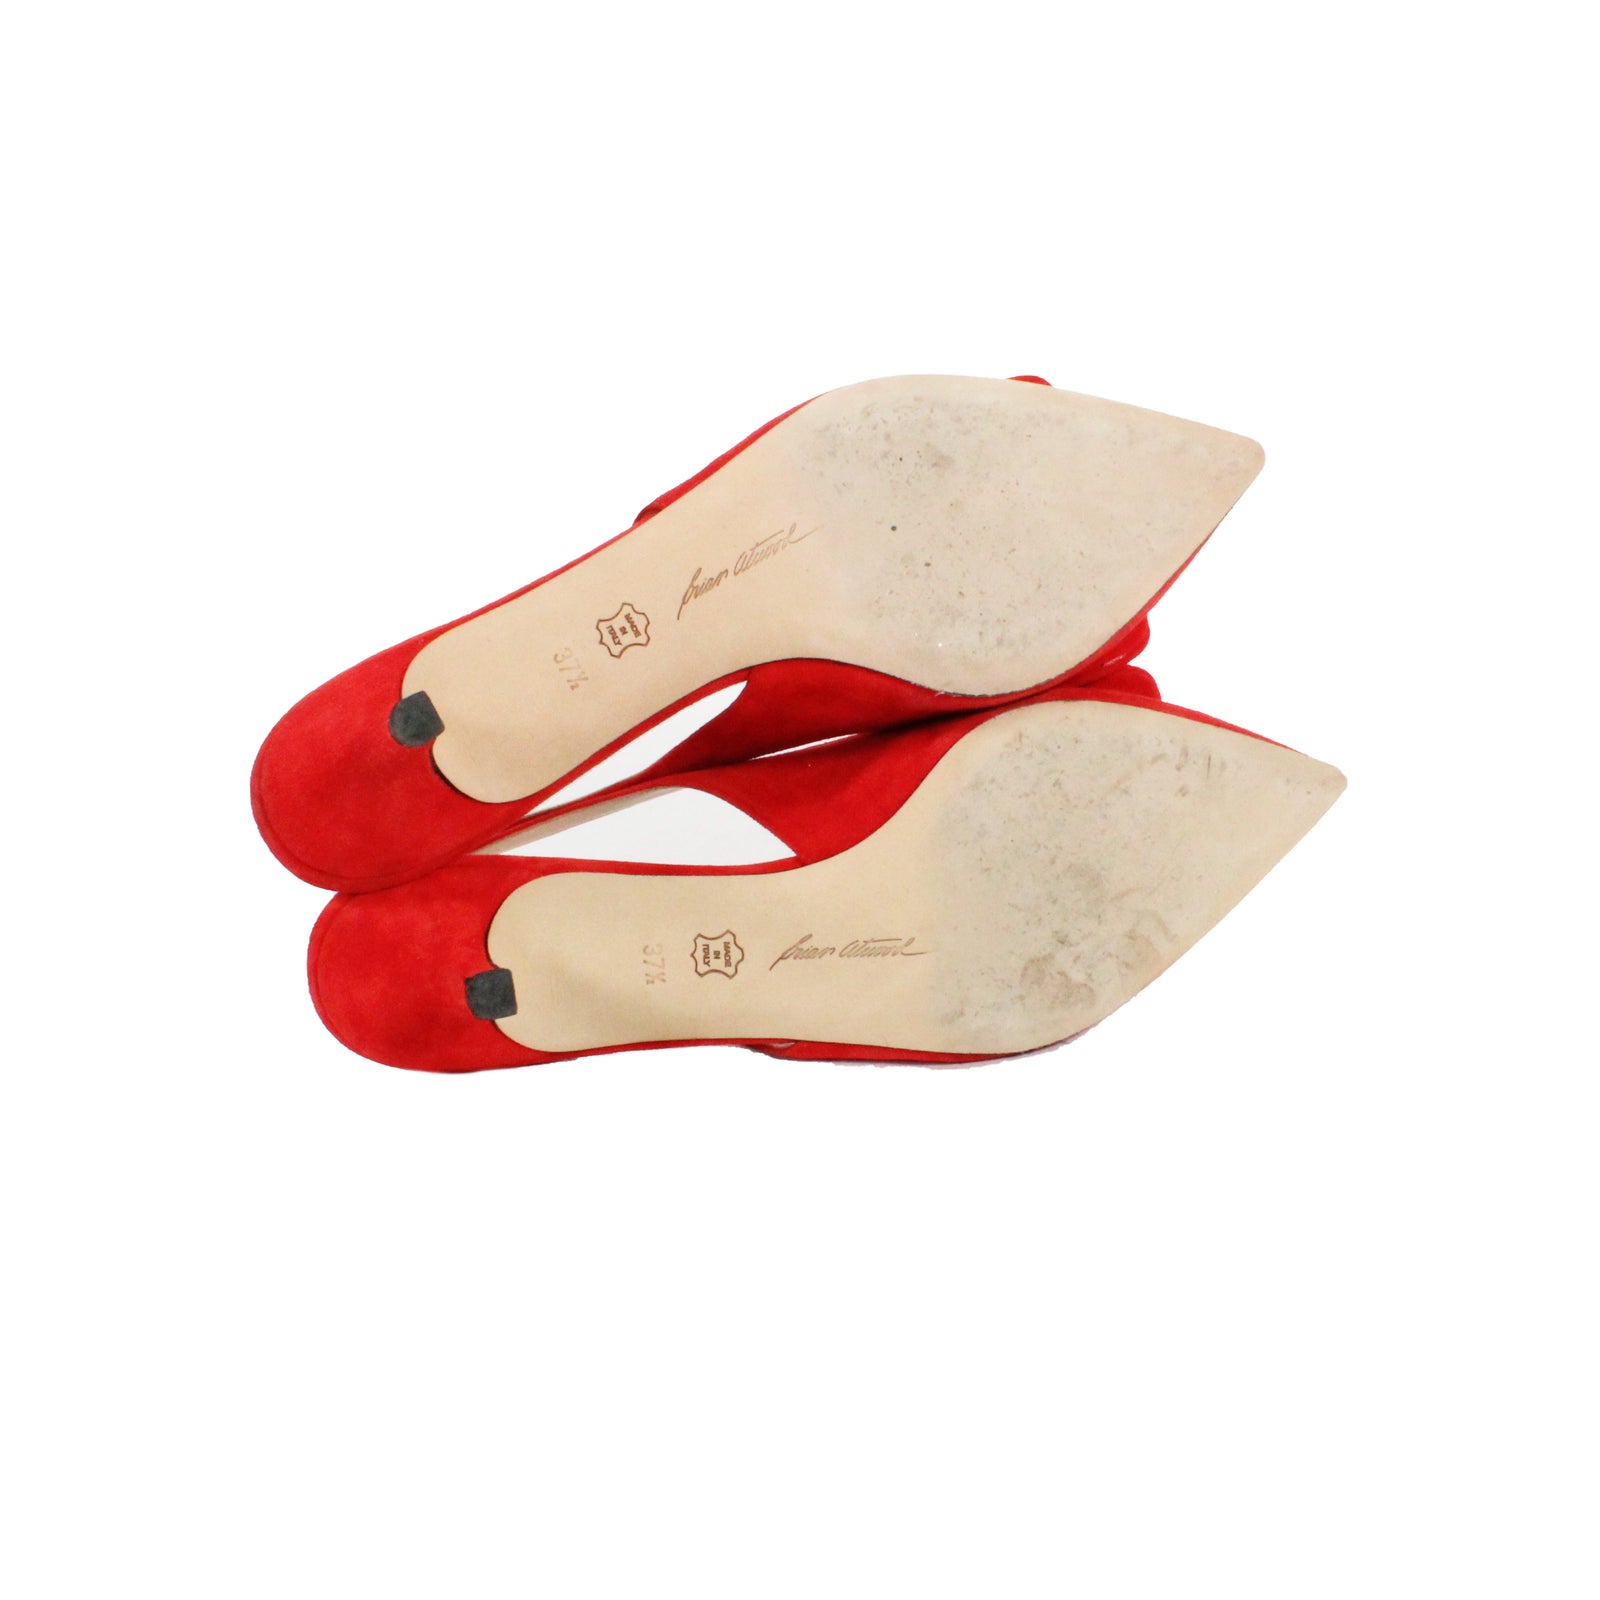 Red Heel Sandals